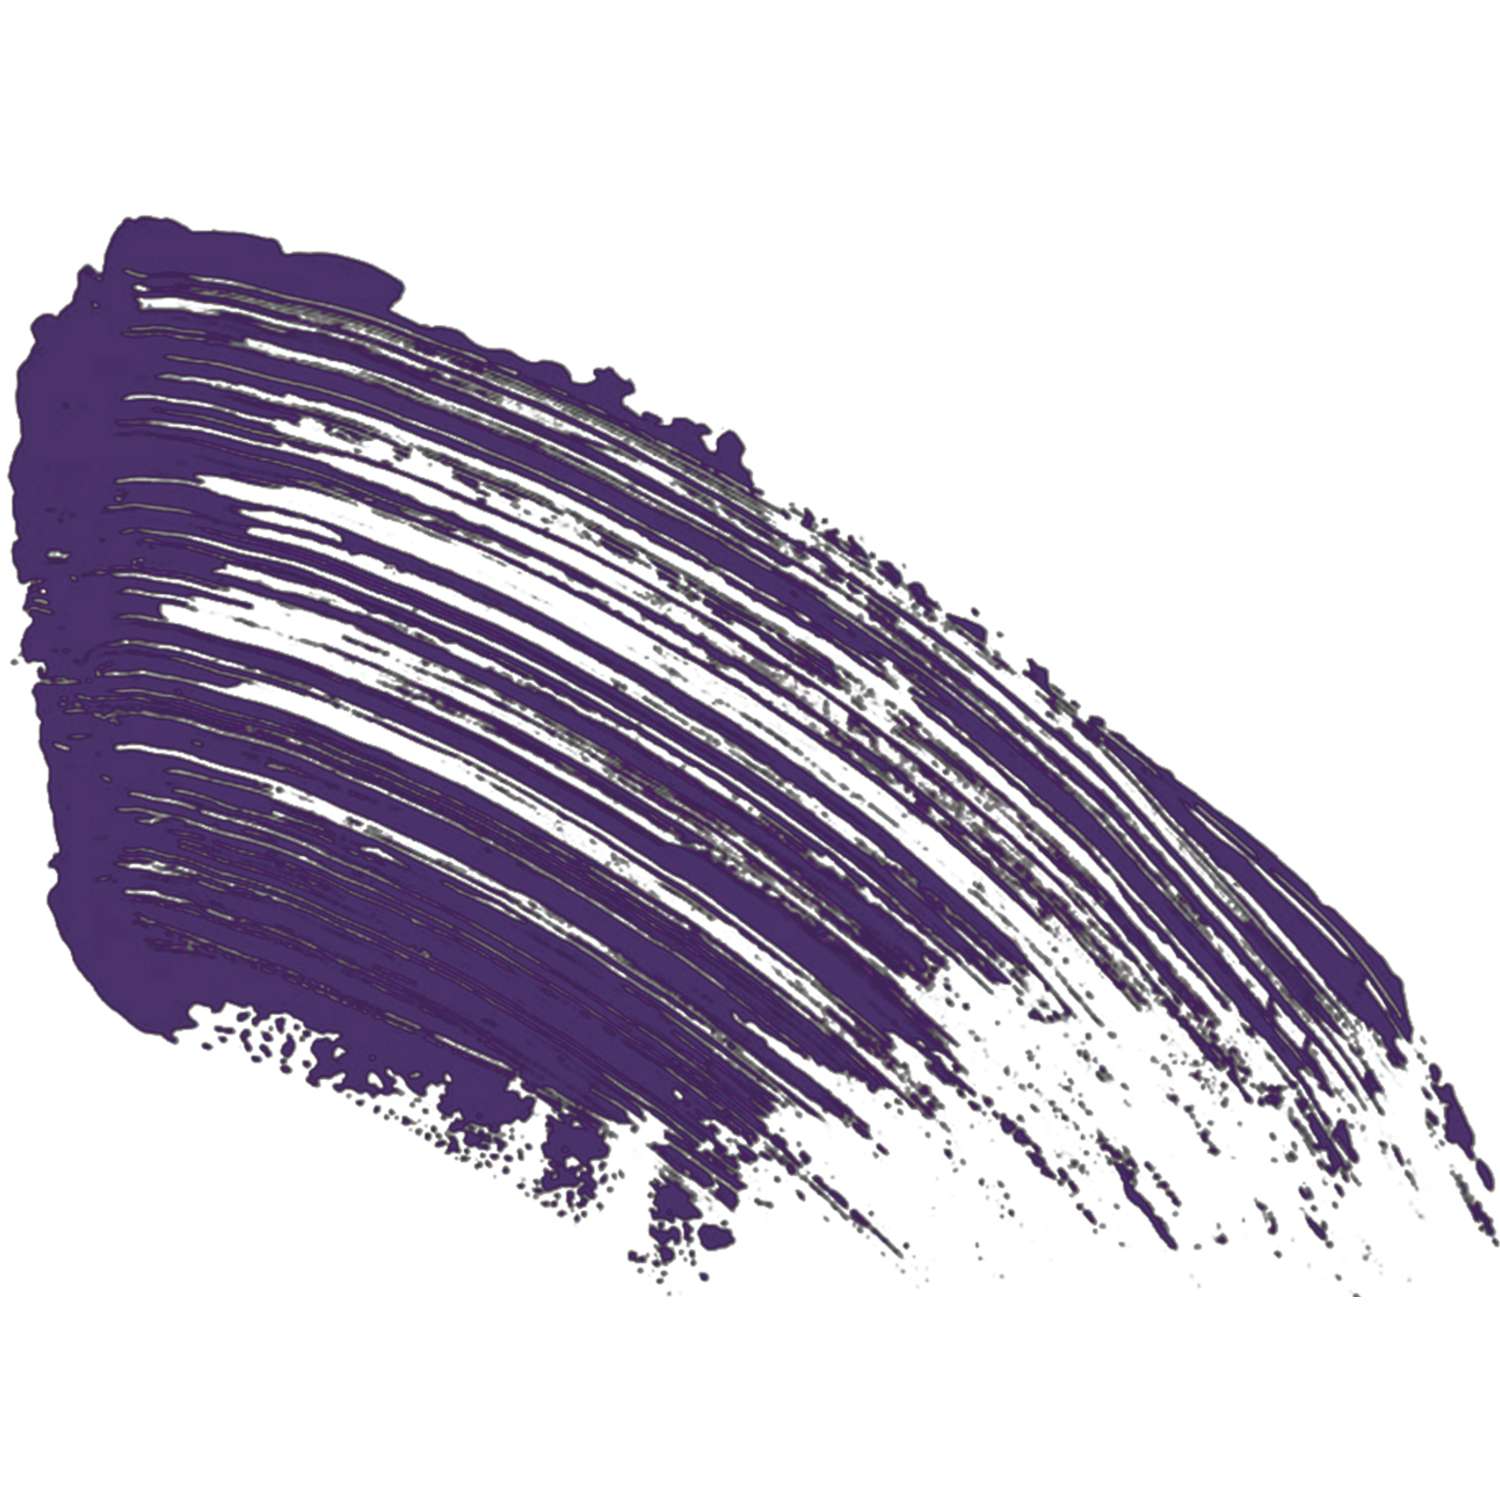 Тушь для ресниц Vivienne Sabo CABARET PREMIERE с эффектом сценического объёма тон 04 фиолетовая 9 мл - фото 6